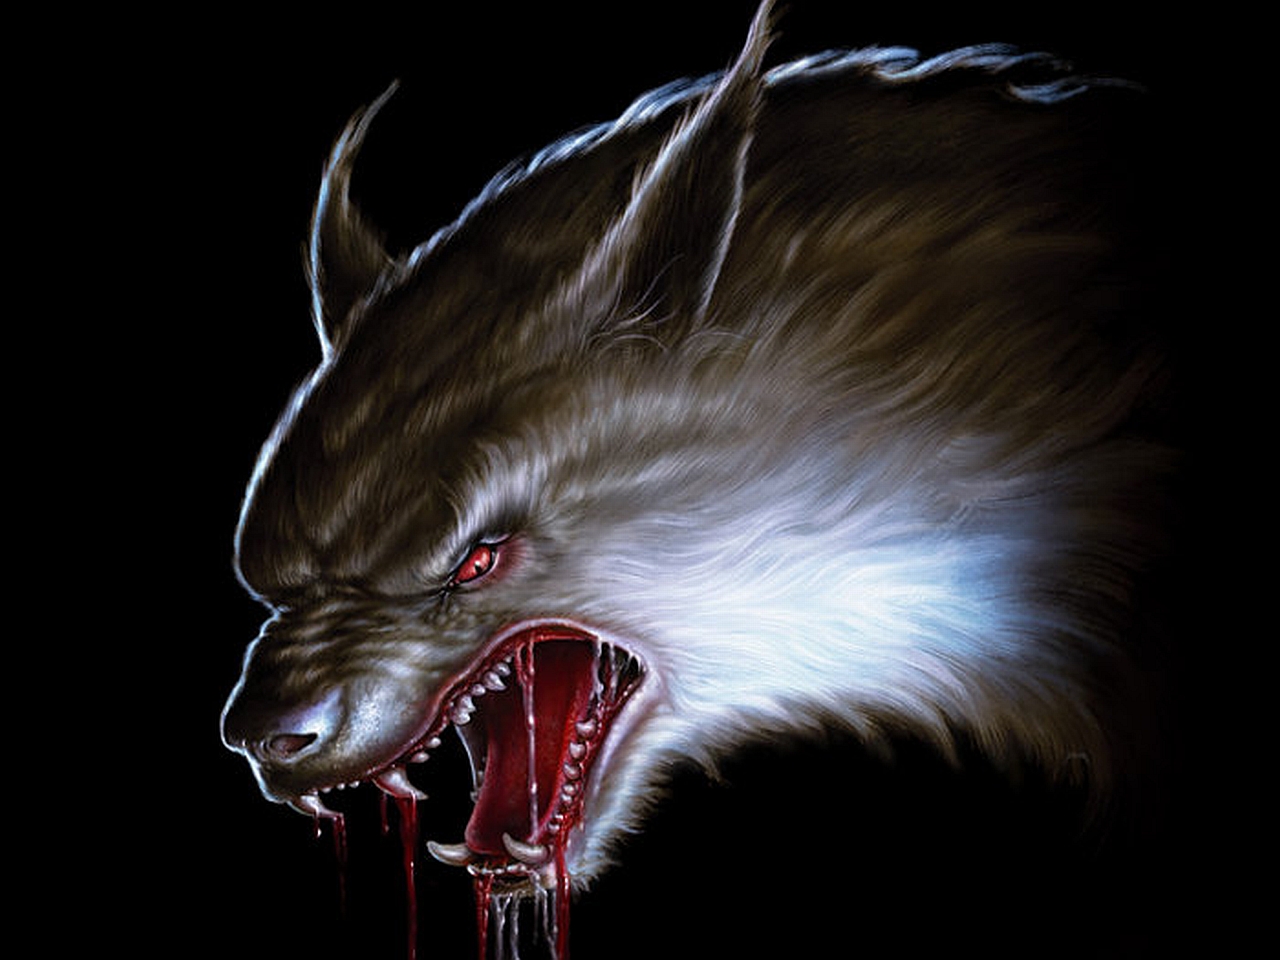 Free download wallpaper Dark, Werewolf on your PC desktop